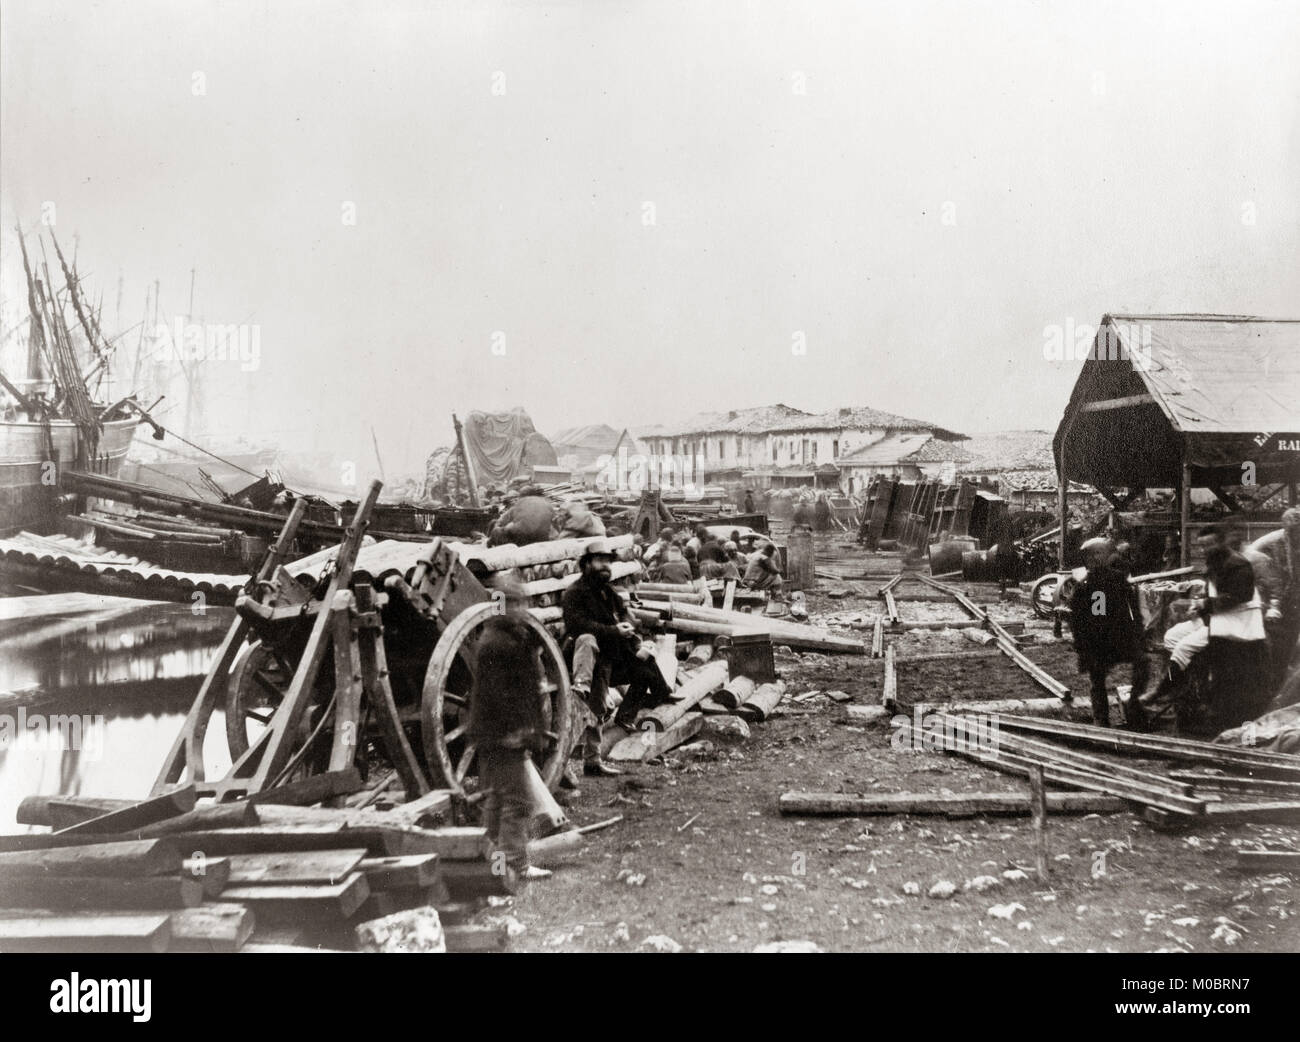 Roger Fenton (1819-1869), la guerra de Crimea, lugar de desembarco, ferrocarriles, almacenes, Balaclava Foto de stock